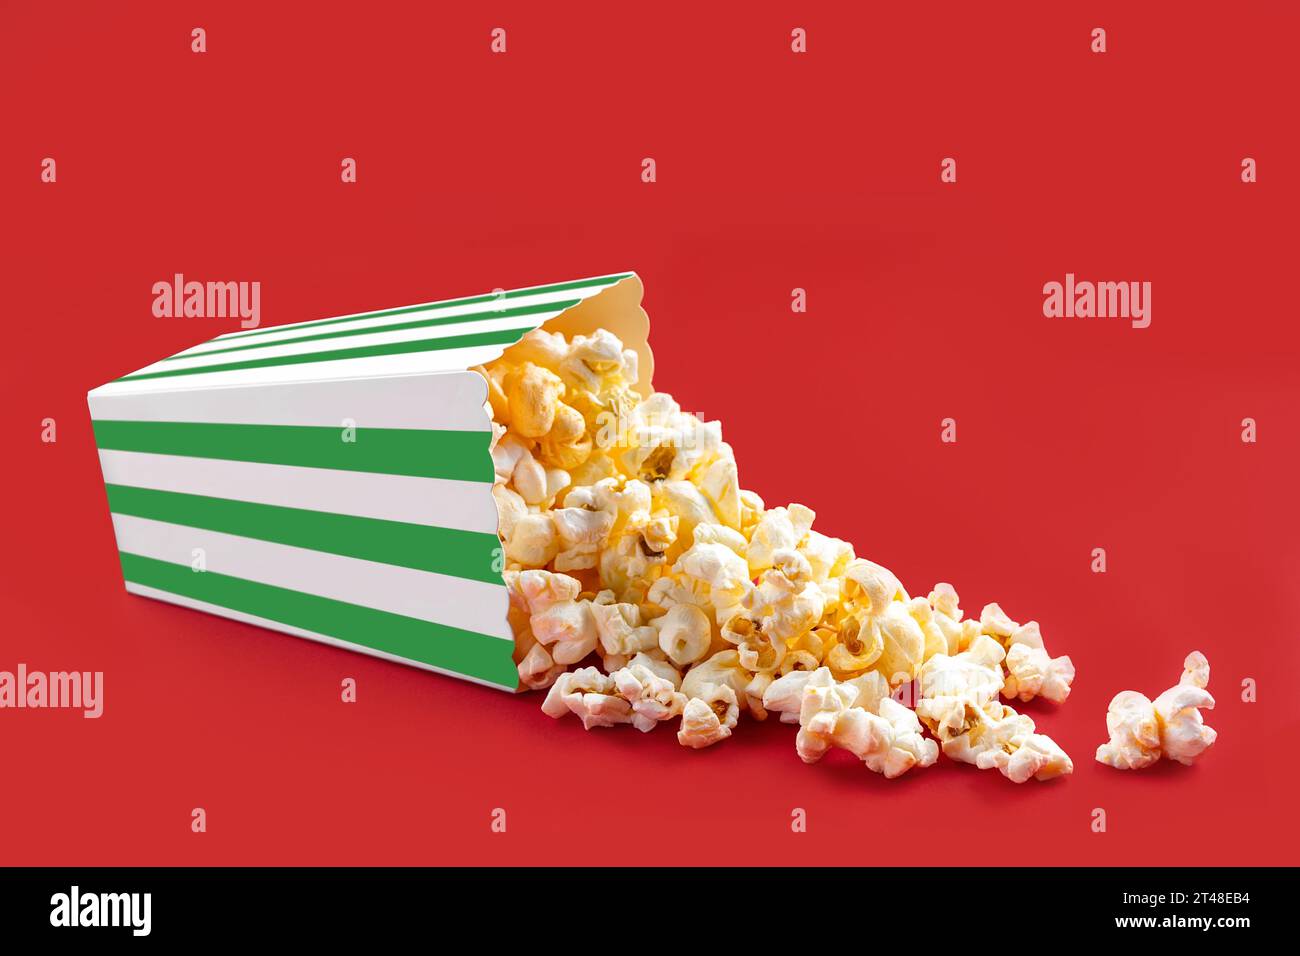 Gustosi popcorn al formaggio che cadono da una scatola di cartone a righe verdi o da un secchio, isolato su sfondo rosso. Dispersione di semi di popcorn. Fast food, snack. Foto Stock